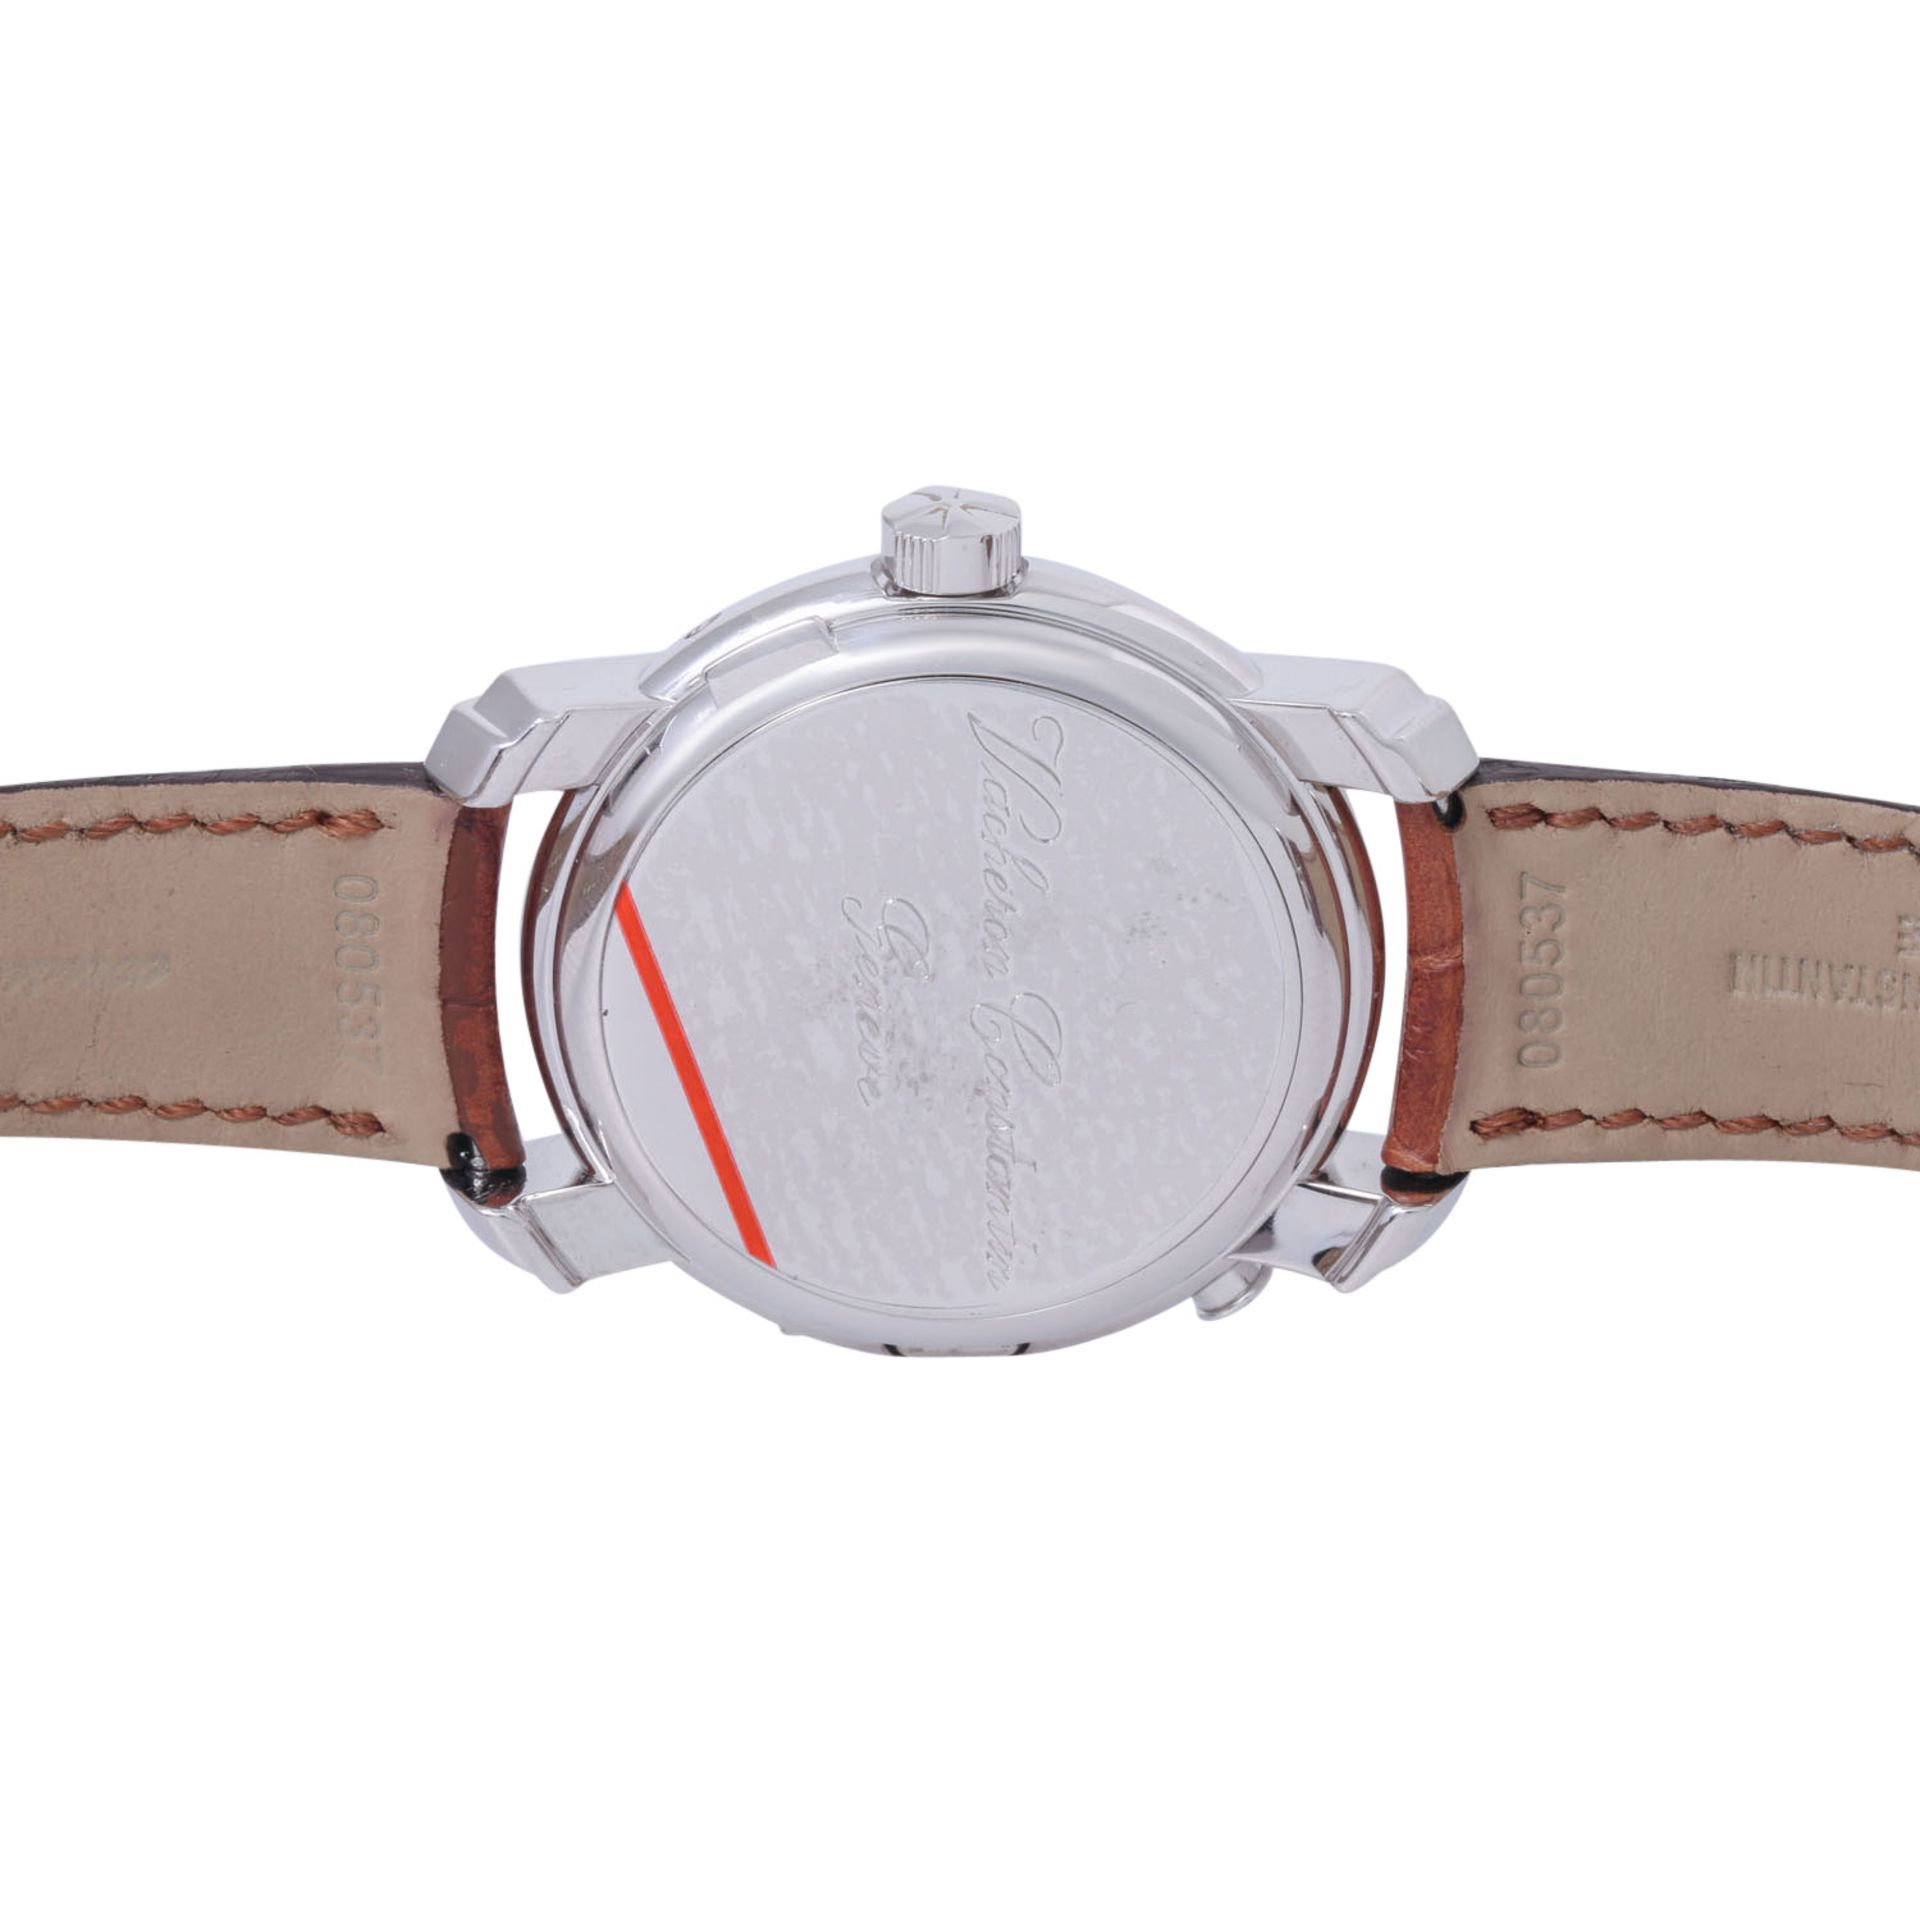 VACHERON CONSTANTIN Malte "Regulateur GMT" hochfeine Herren Armbanduhr, Ref. 42005/000G. Full Set au - Bild 3 aus 9